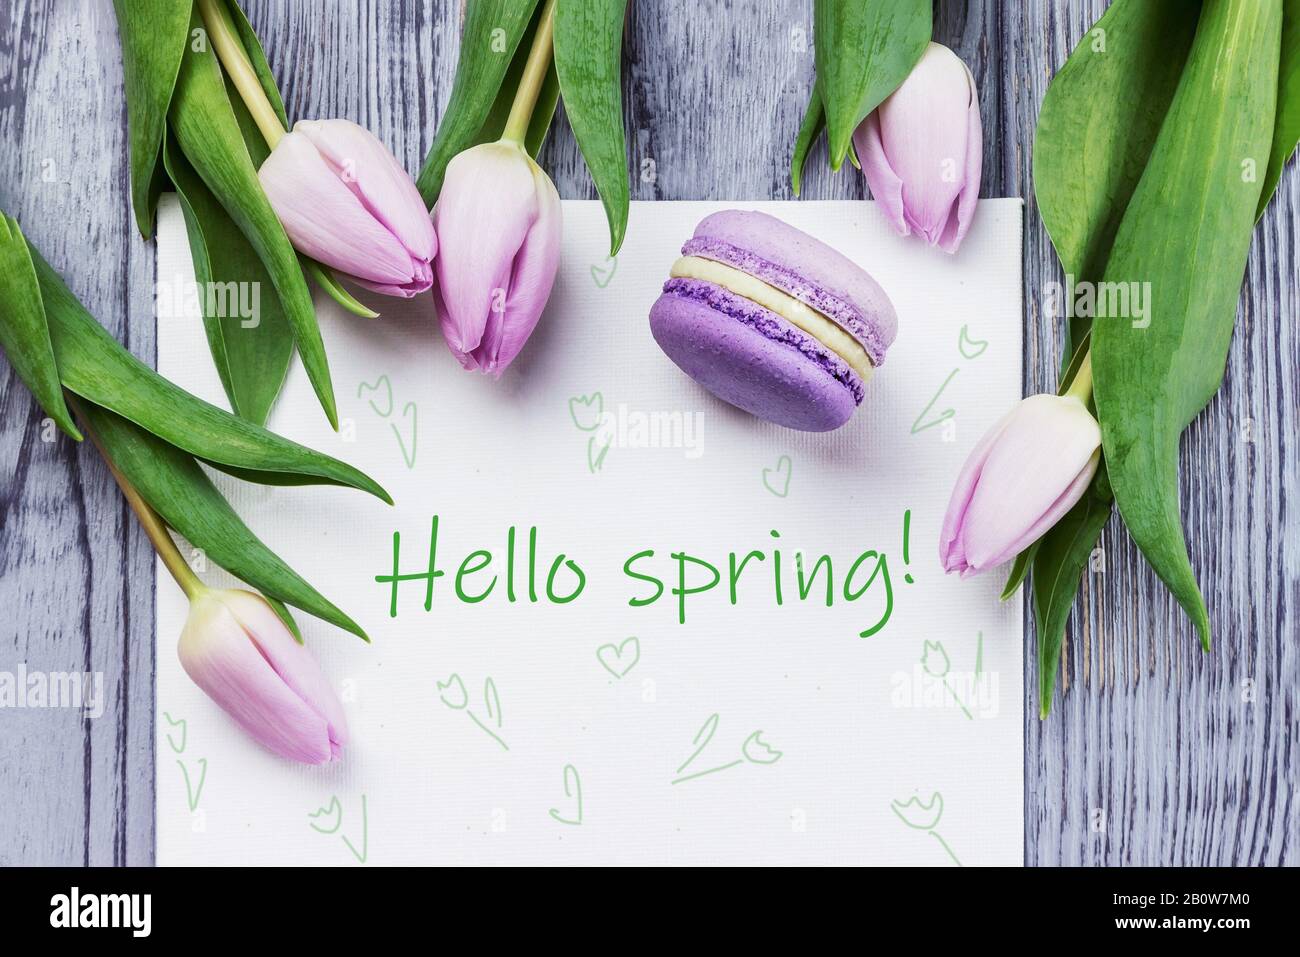 spring images for desktop